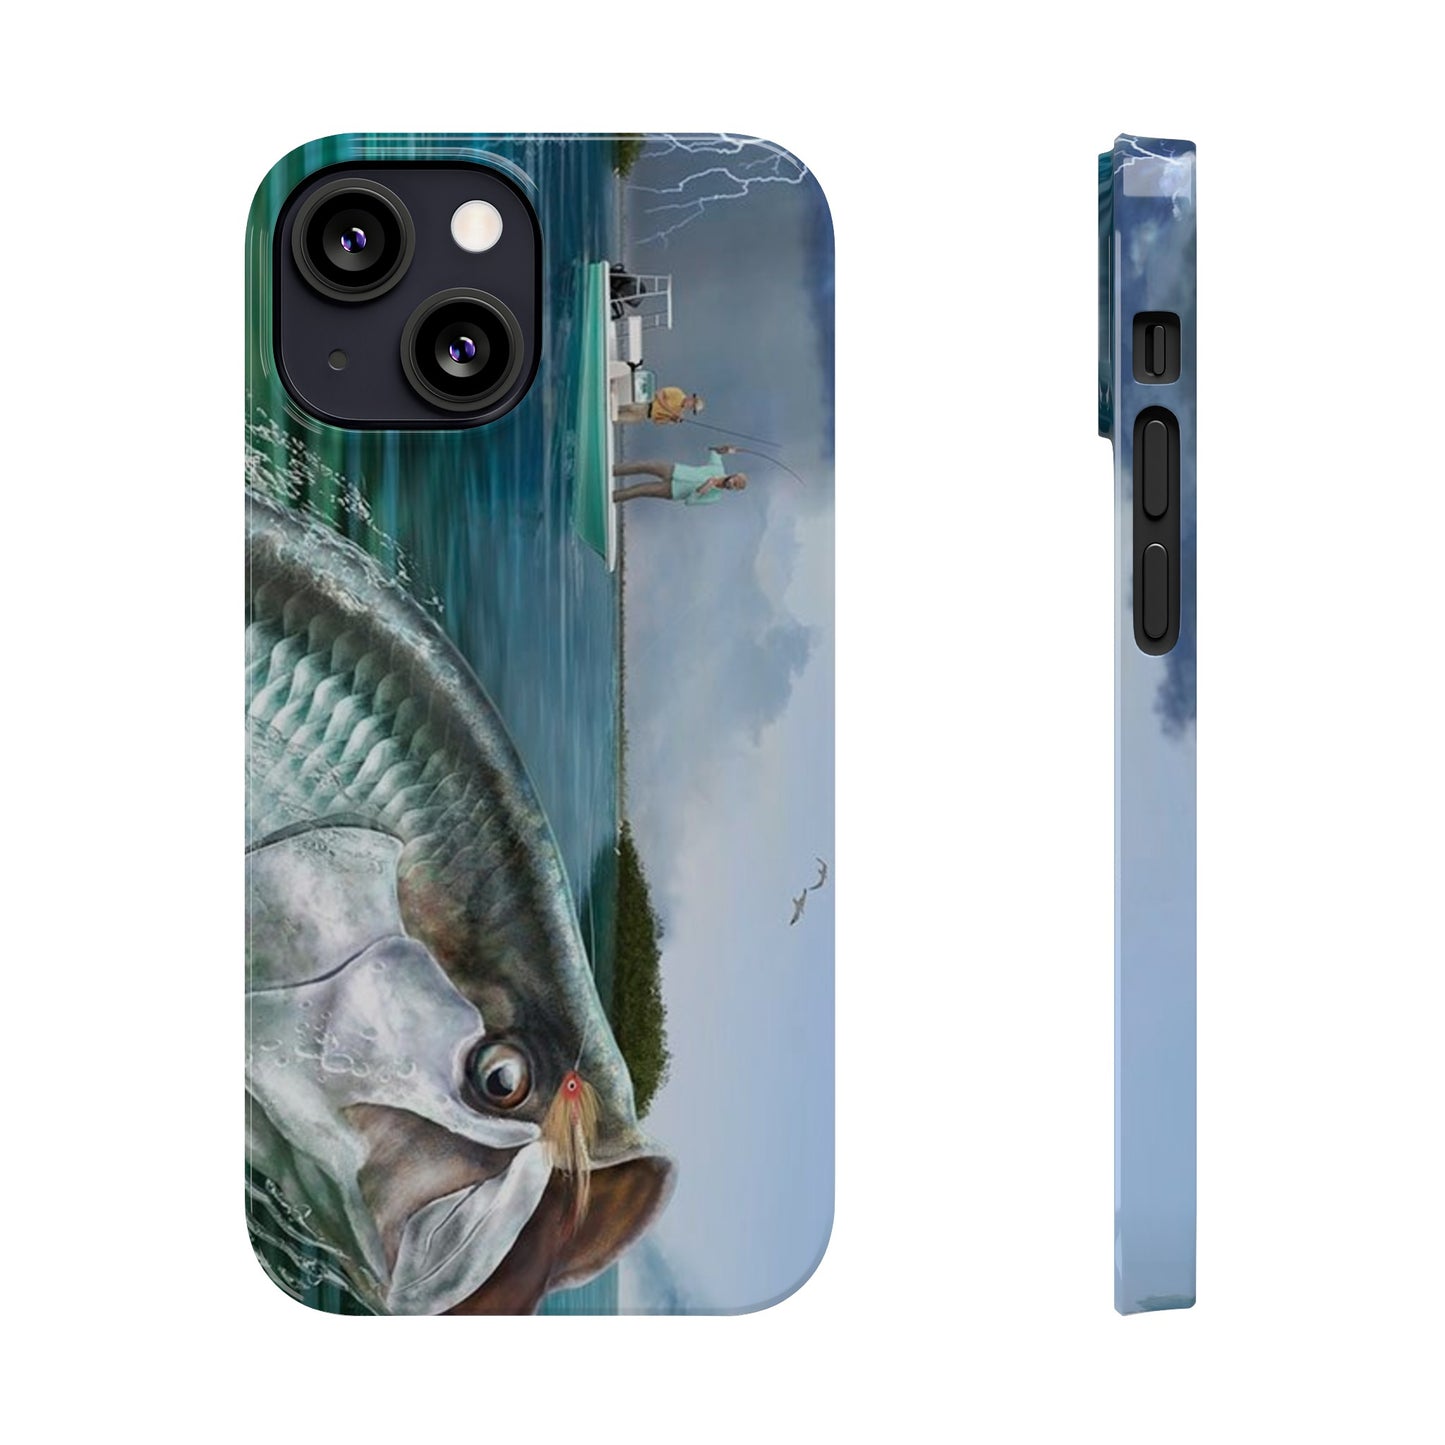 Tarpon Phone Case, Fishing Phone Case